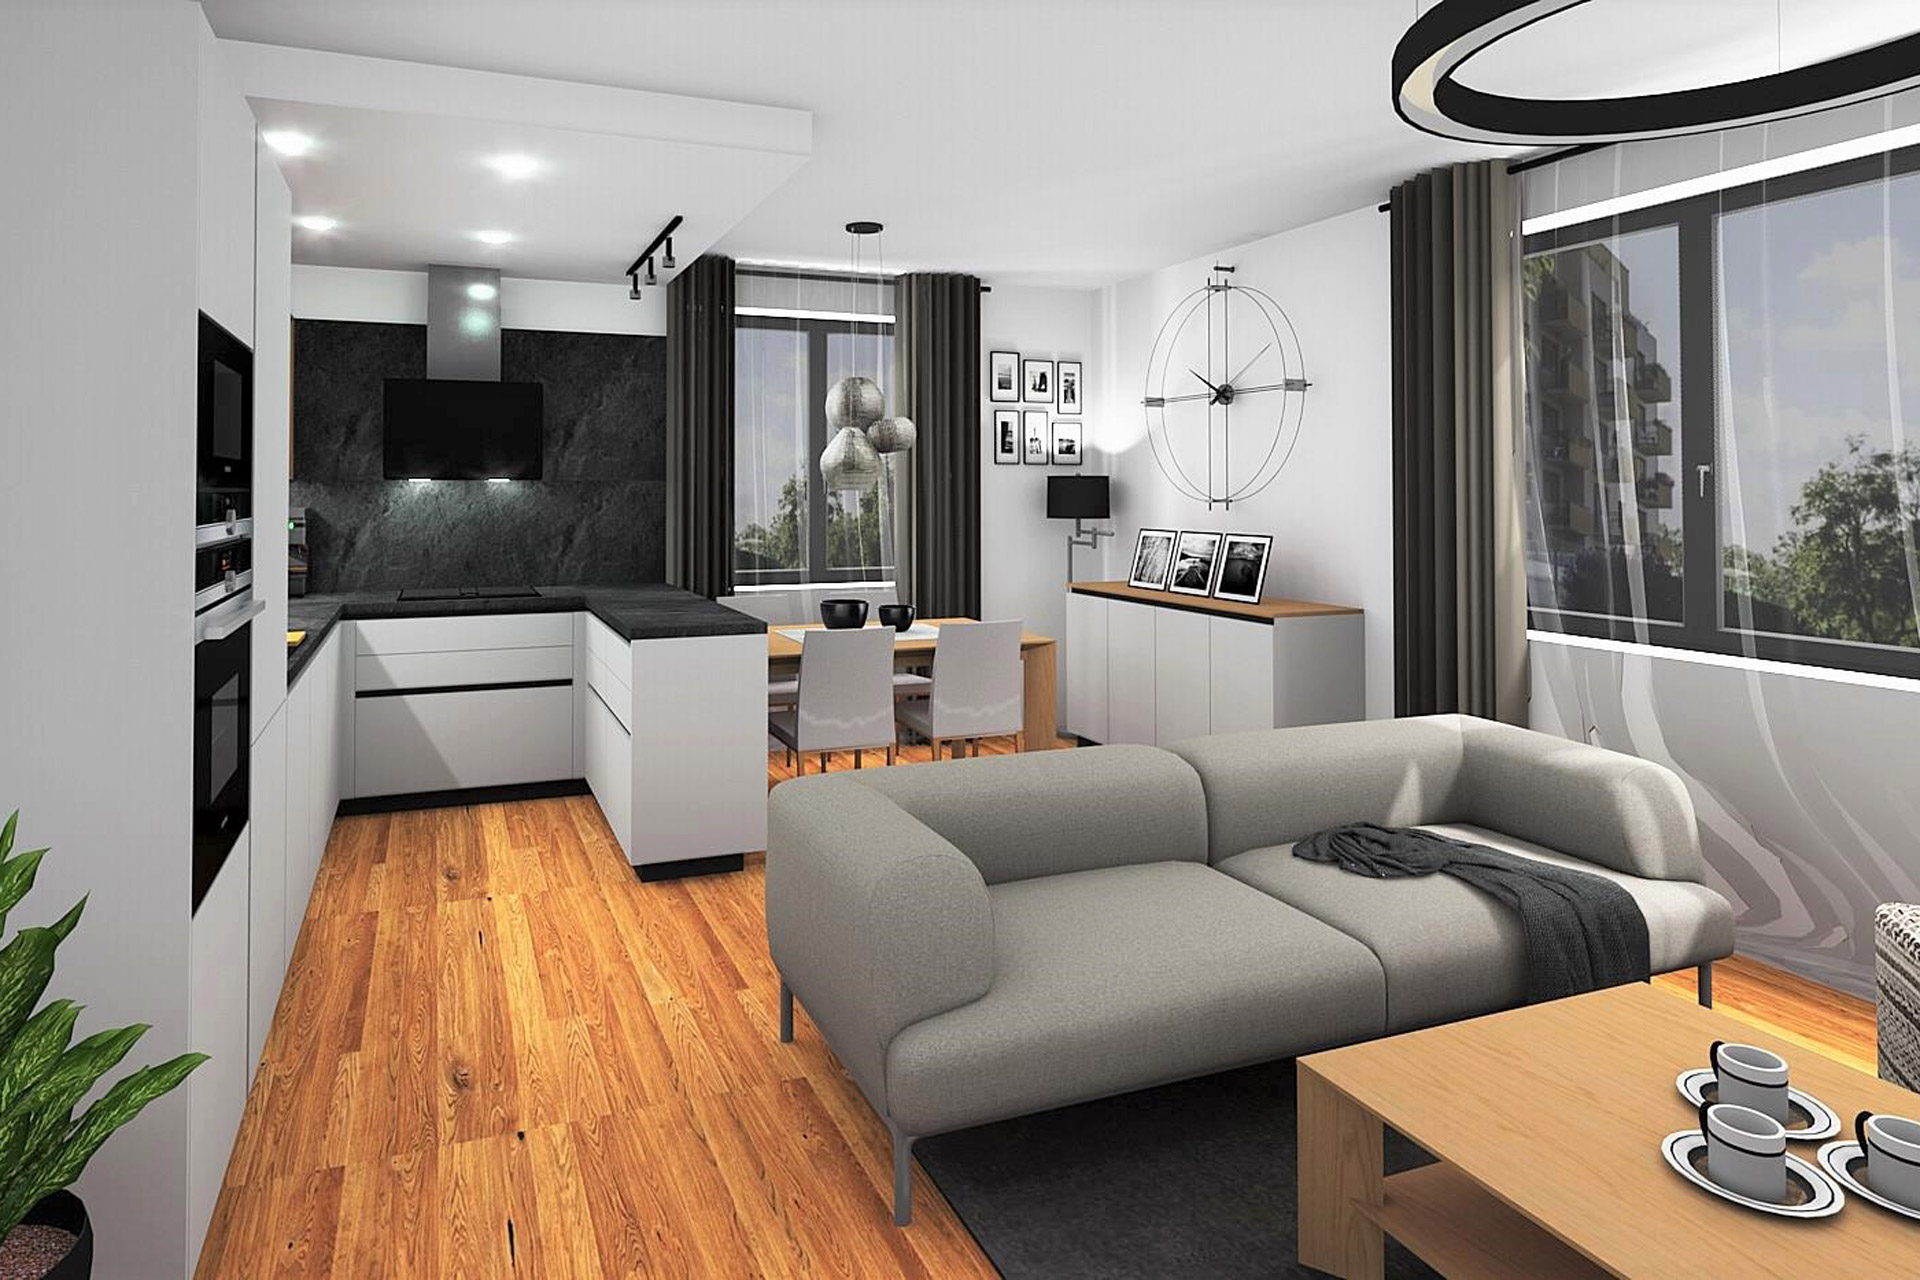 Hanák Interior design Kitchen with living room